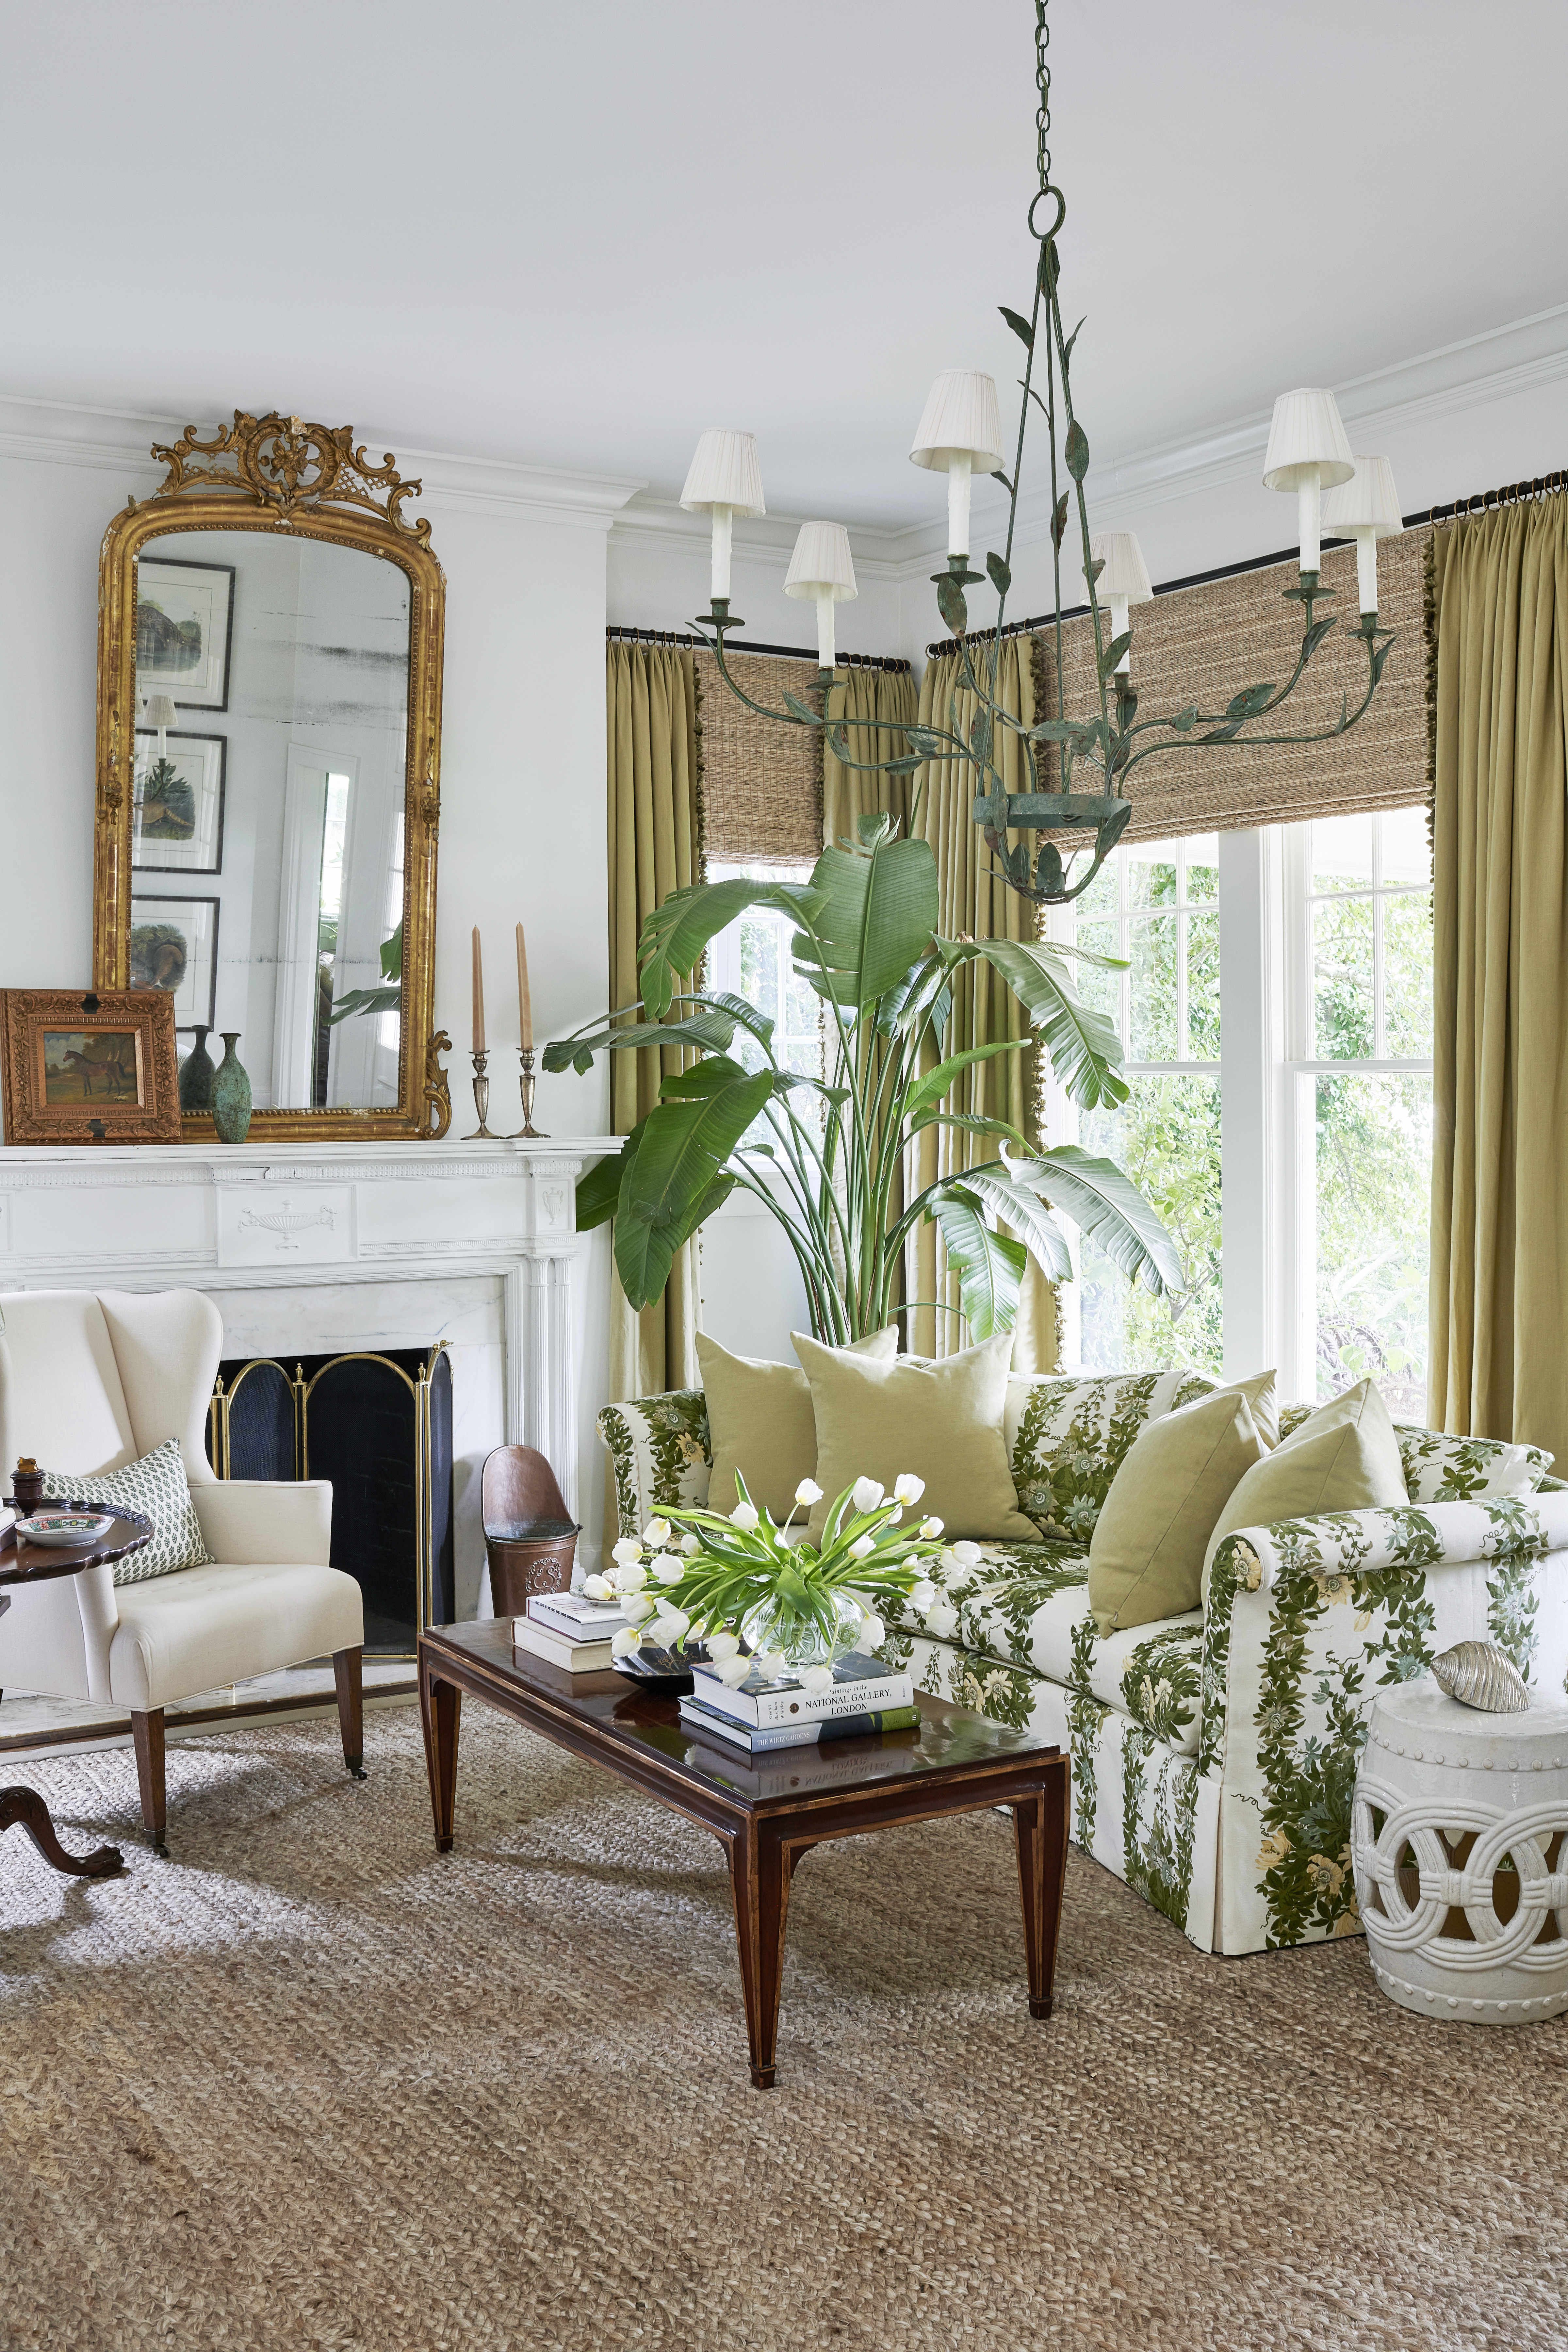 GORGEOUS Large Ceramic Vase Italian Design Art Inspired Home Interior Decoration 